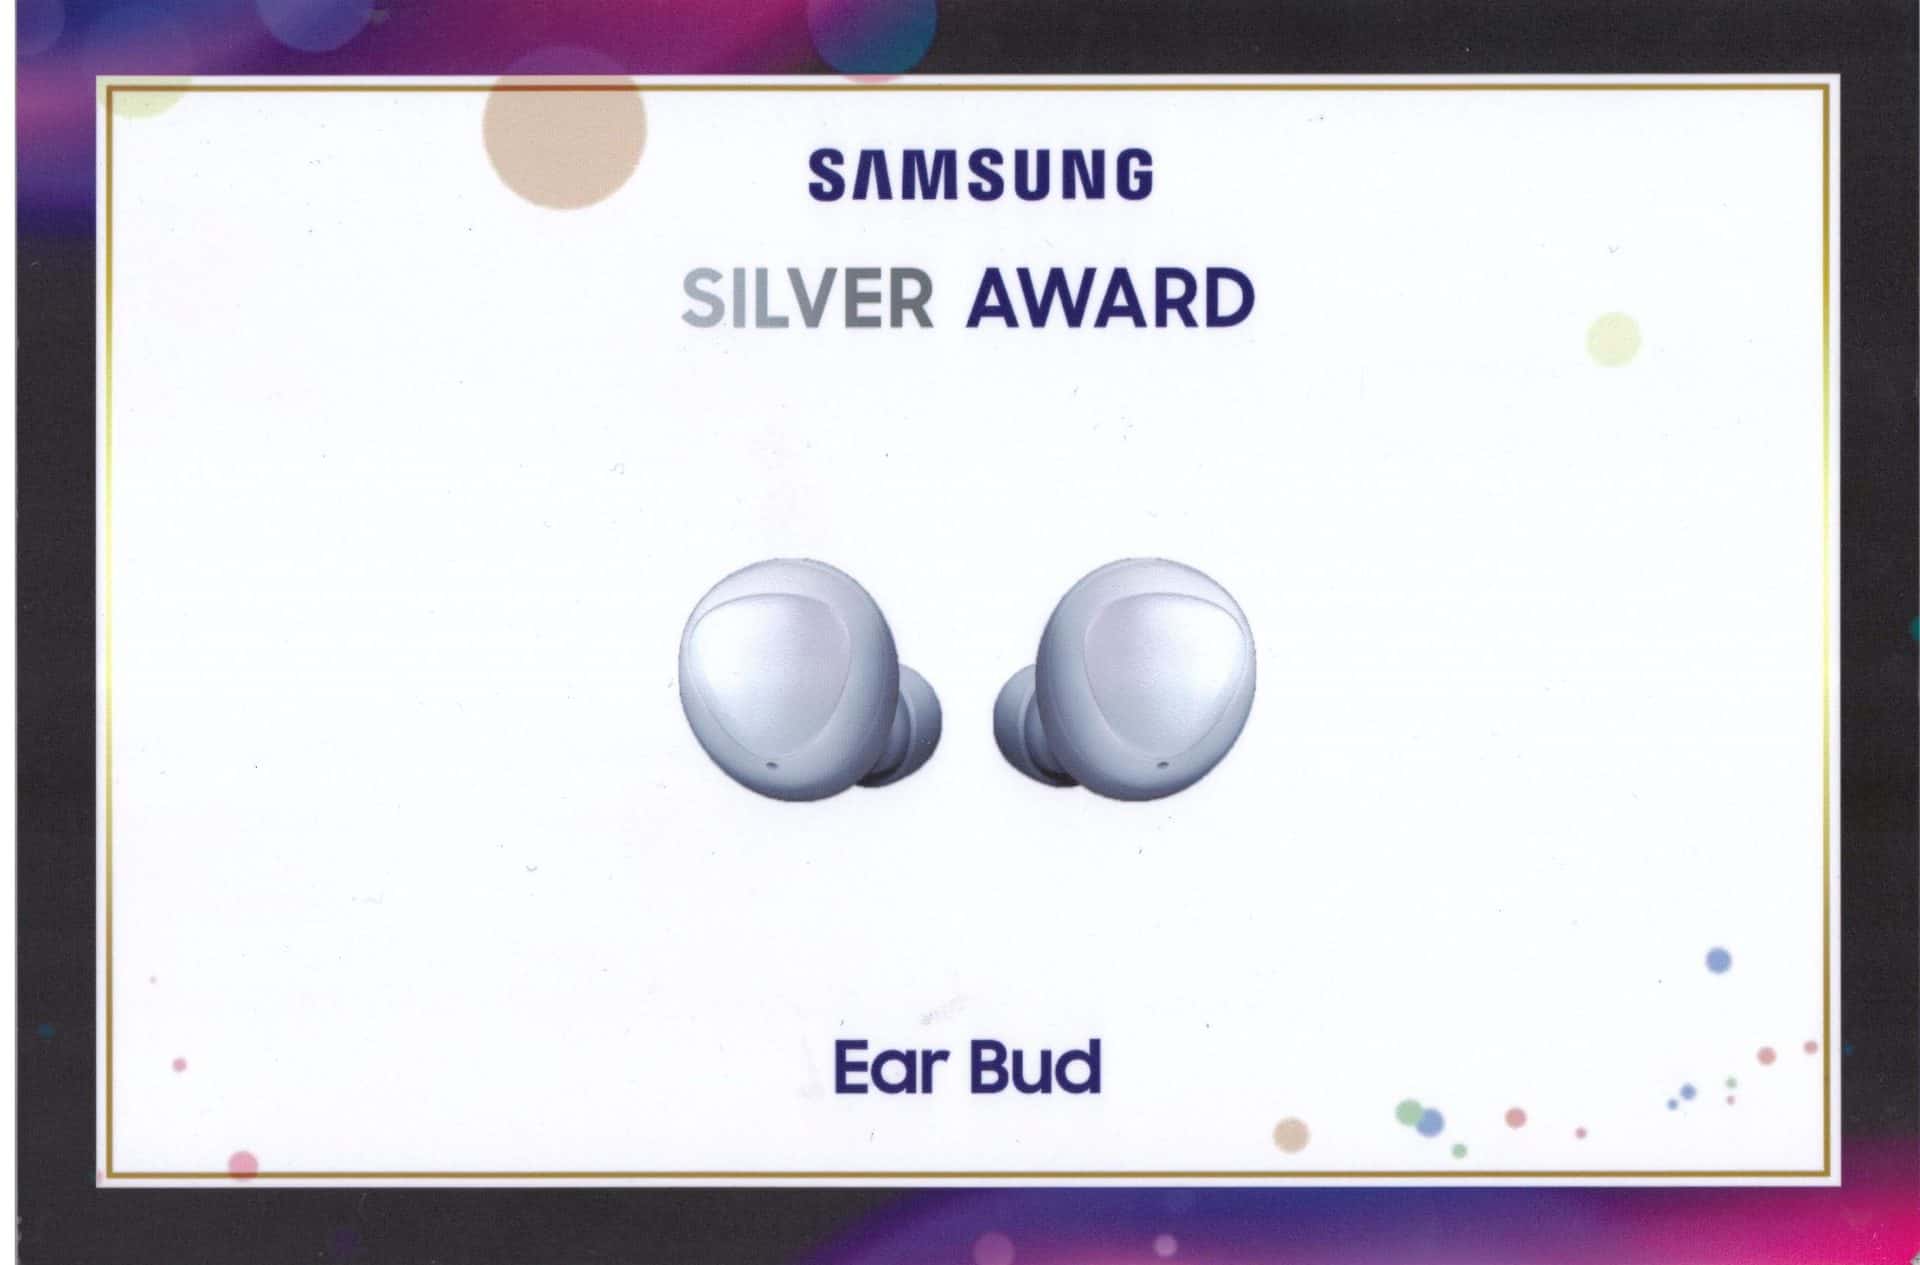 Samsung Ear Bud 1 2020 1